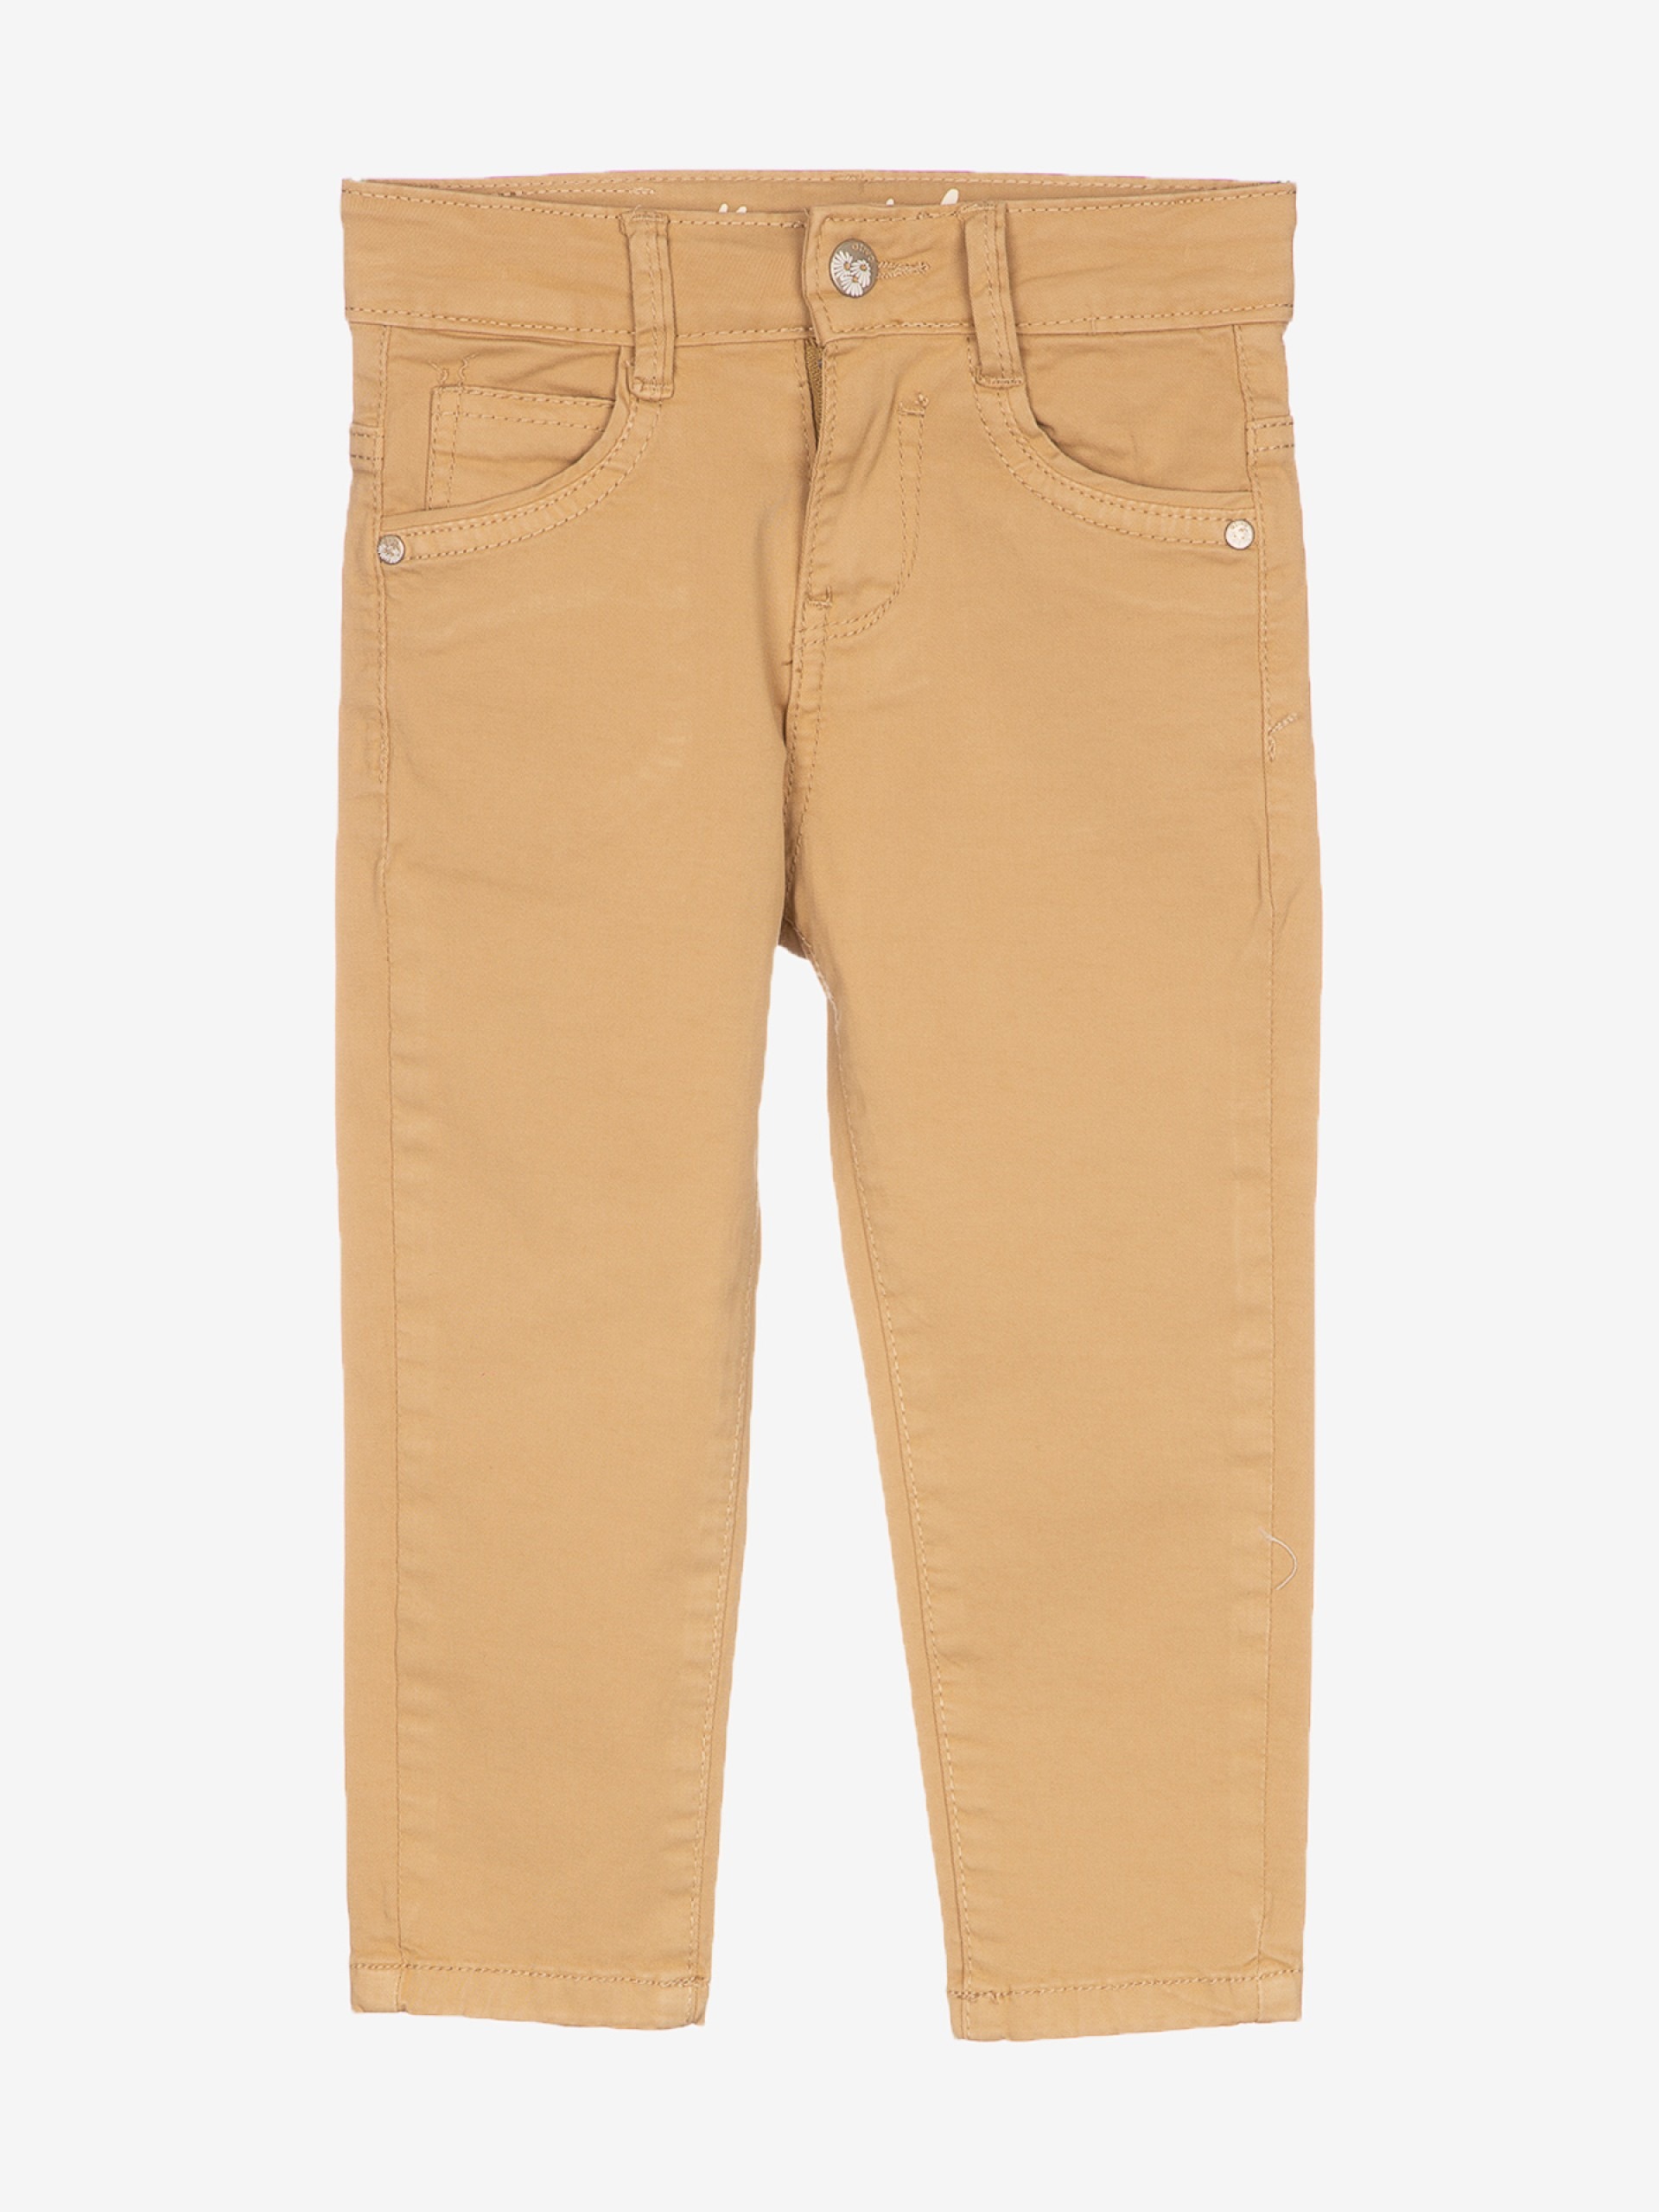 pantalon jean beige slim vêtement enfant bébé garçon joli pas cher confortable boutique saint martin en haut